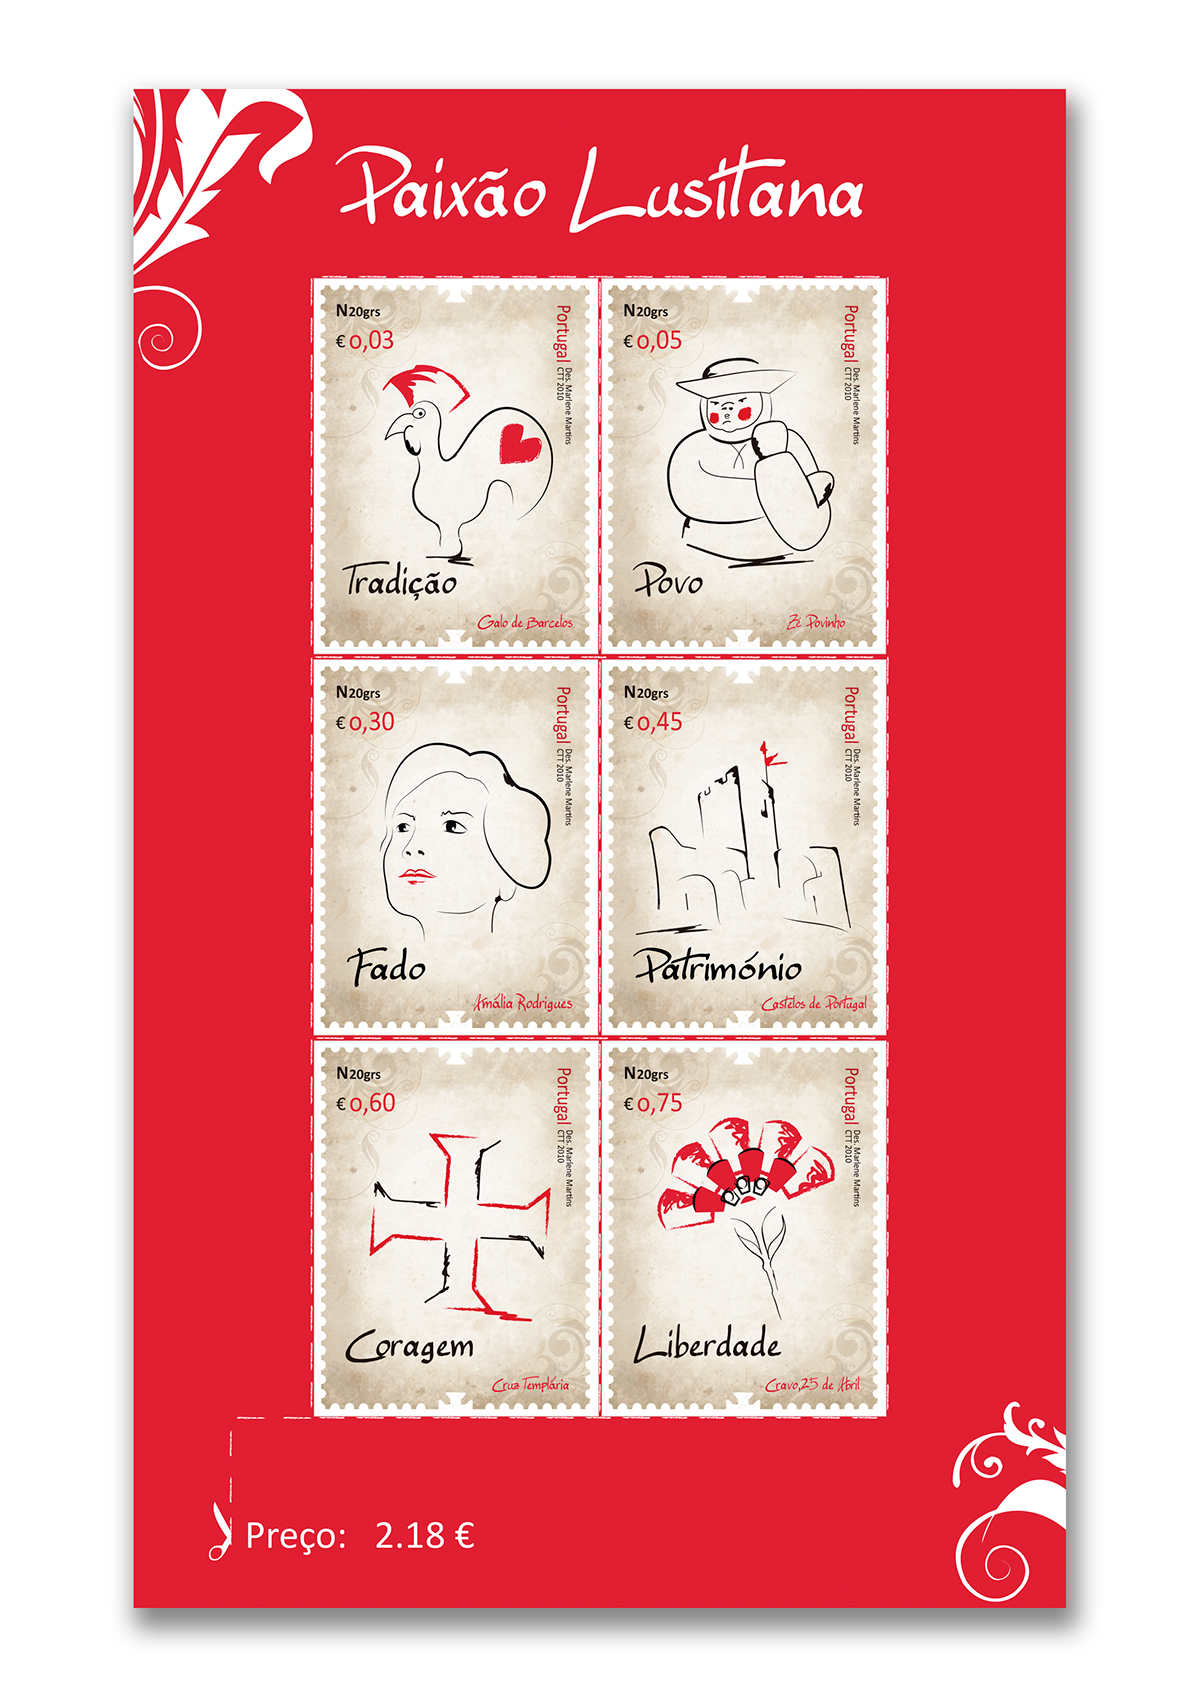 Selos stamps Portugal Stamps Collection Galo de Barcelos Zé Povinho amália rodrigues Templários cravos